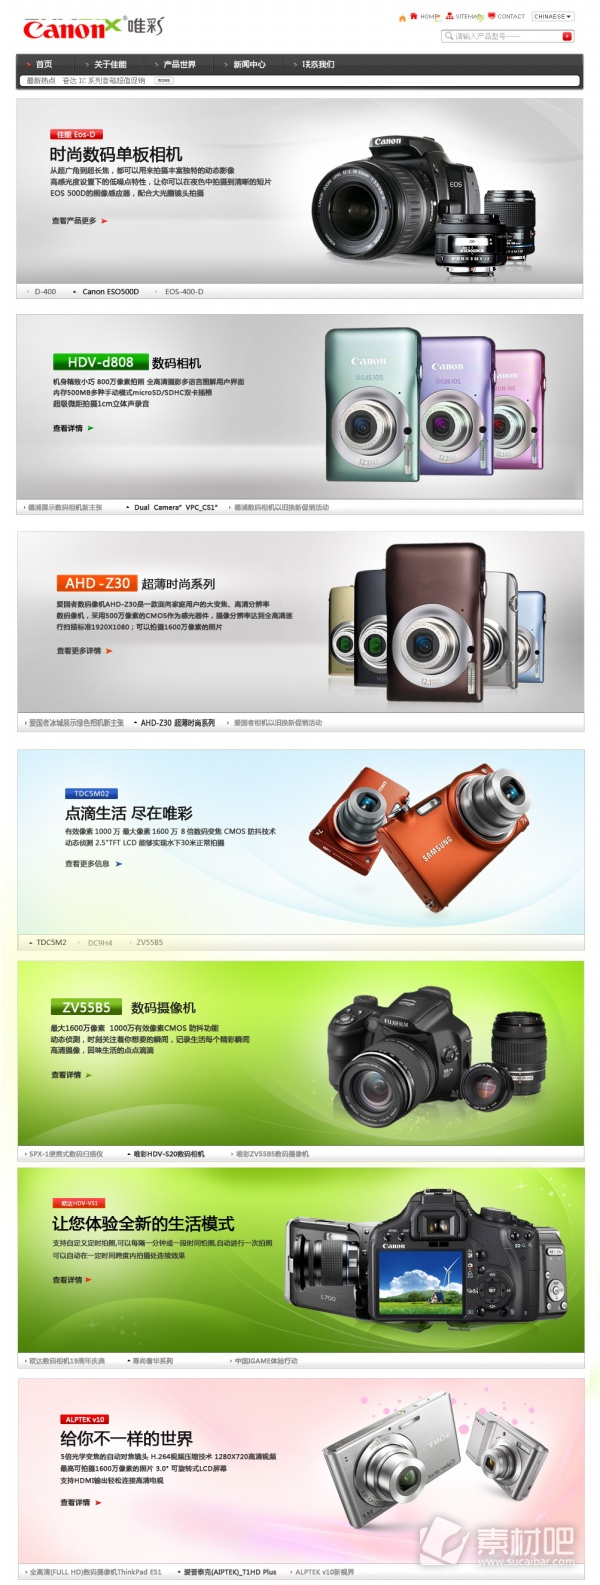 多款相机数码相机介绍网页PSD素材